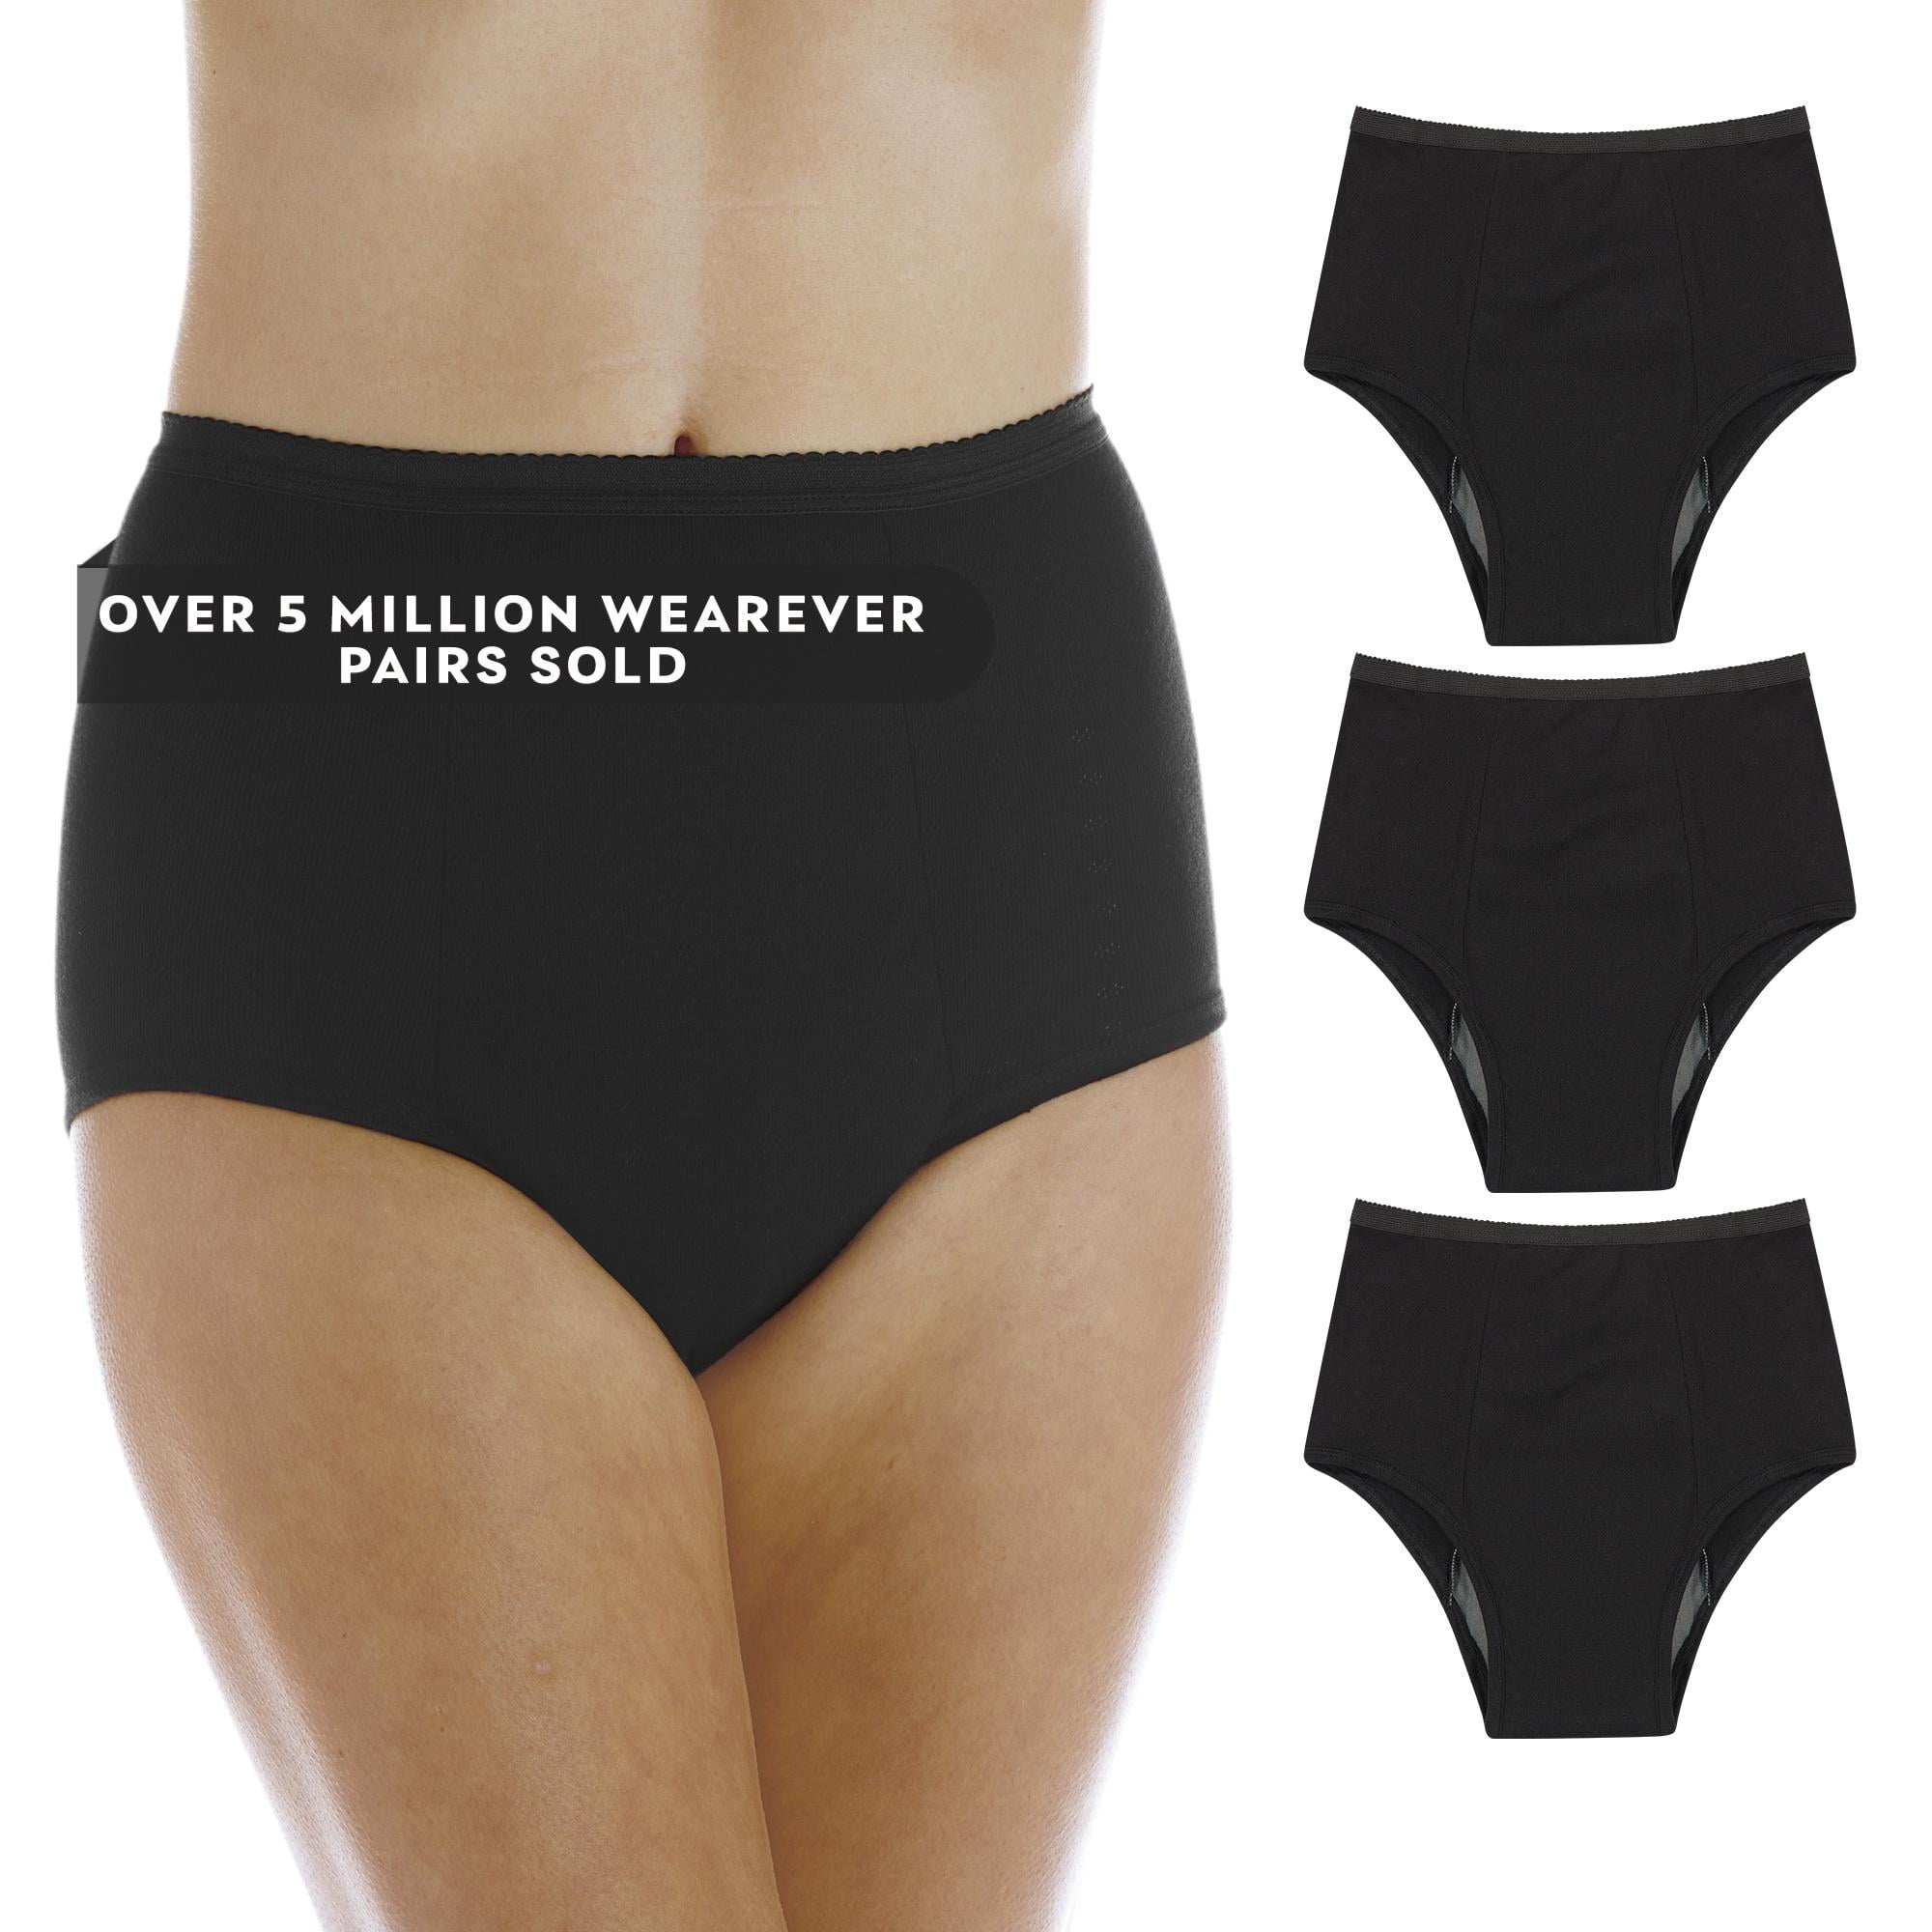 Where To Buy Wearever Underwear, Wearever